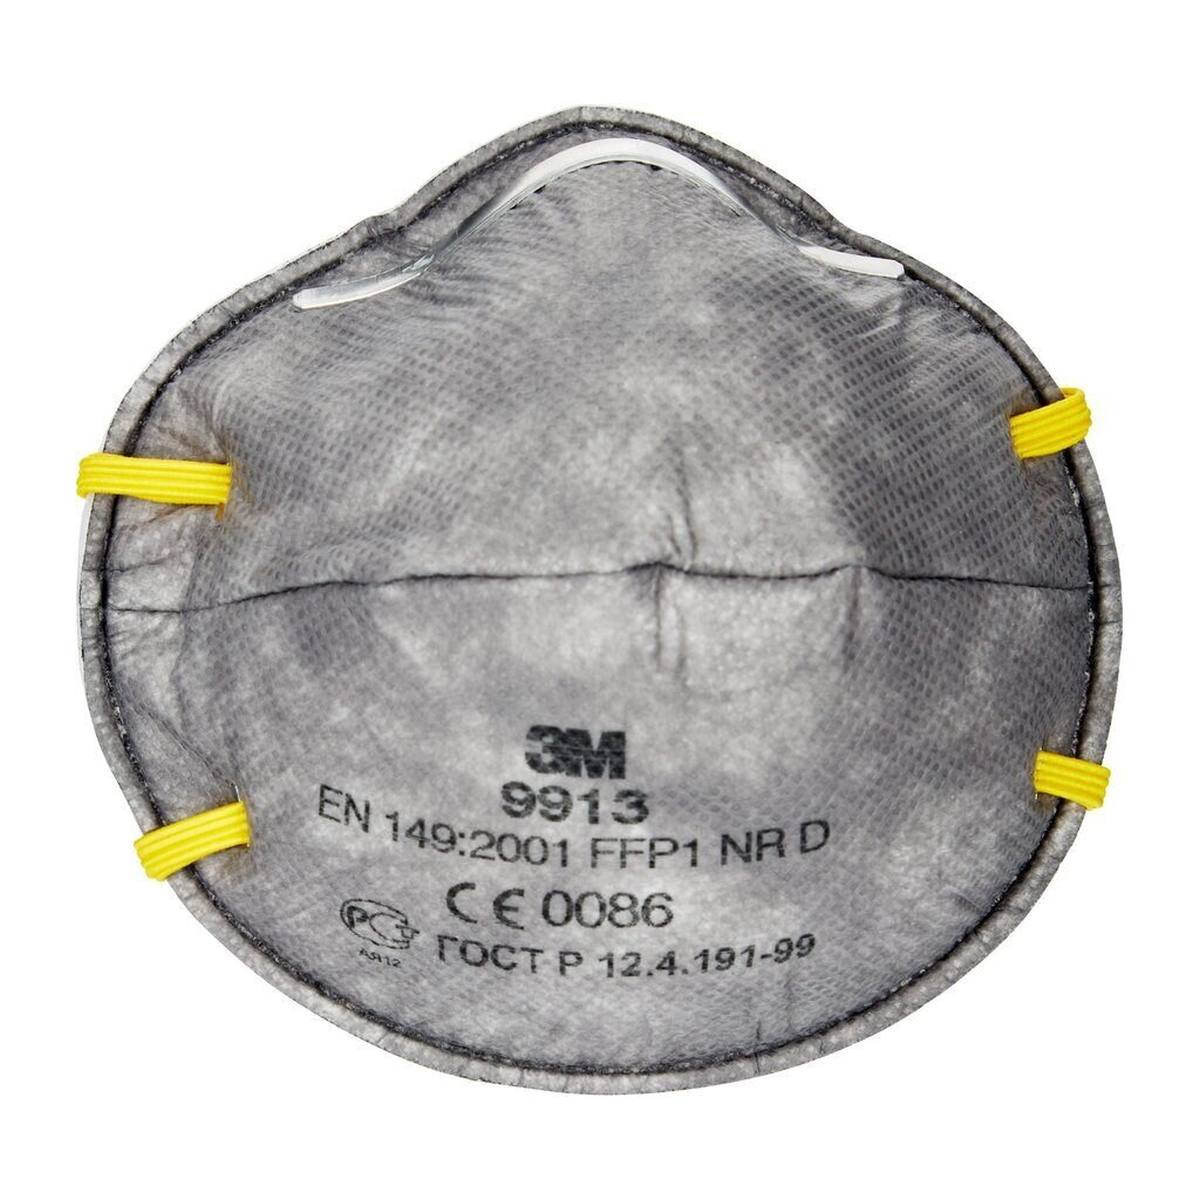 3M 9913 Máscara de protección contra olores FFP1, hasta 4 veces el valor límite y contra olores orgánicos por debajo del valor límite